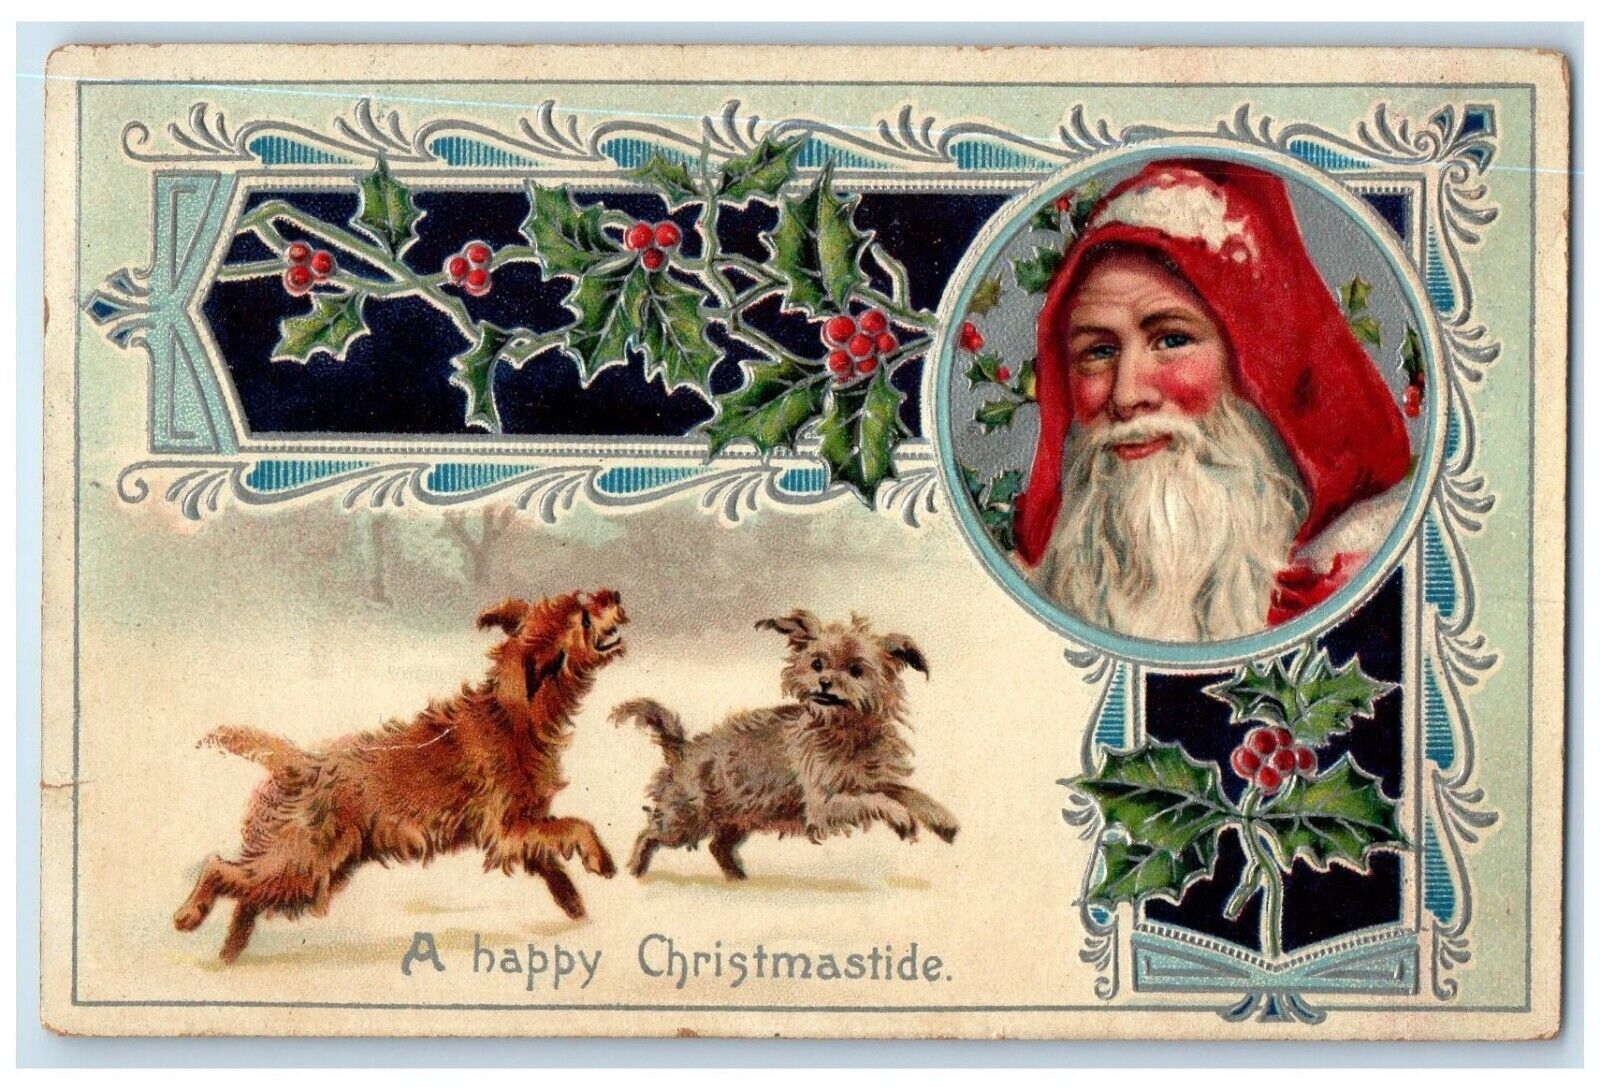 1911 Christmas Sana Claus Holly Berries Terrier Dog Lincoln Nebraska NE Postcard